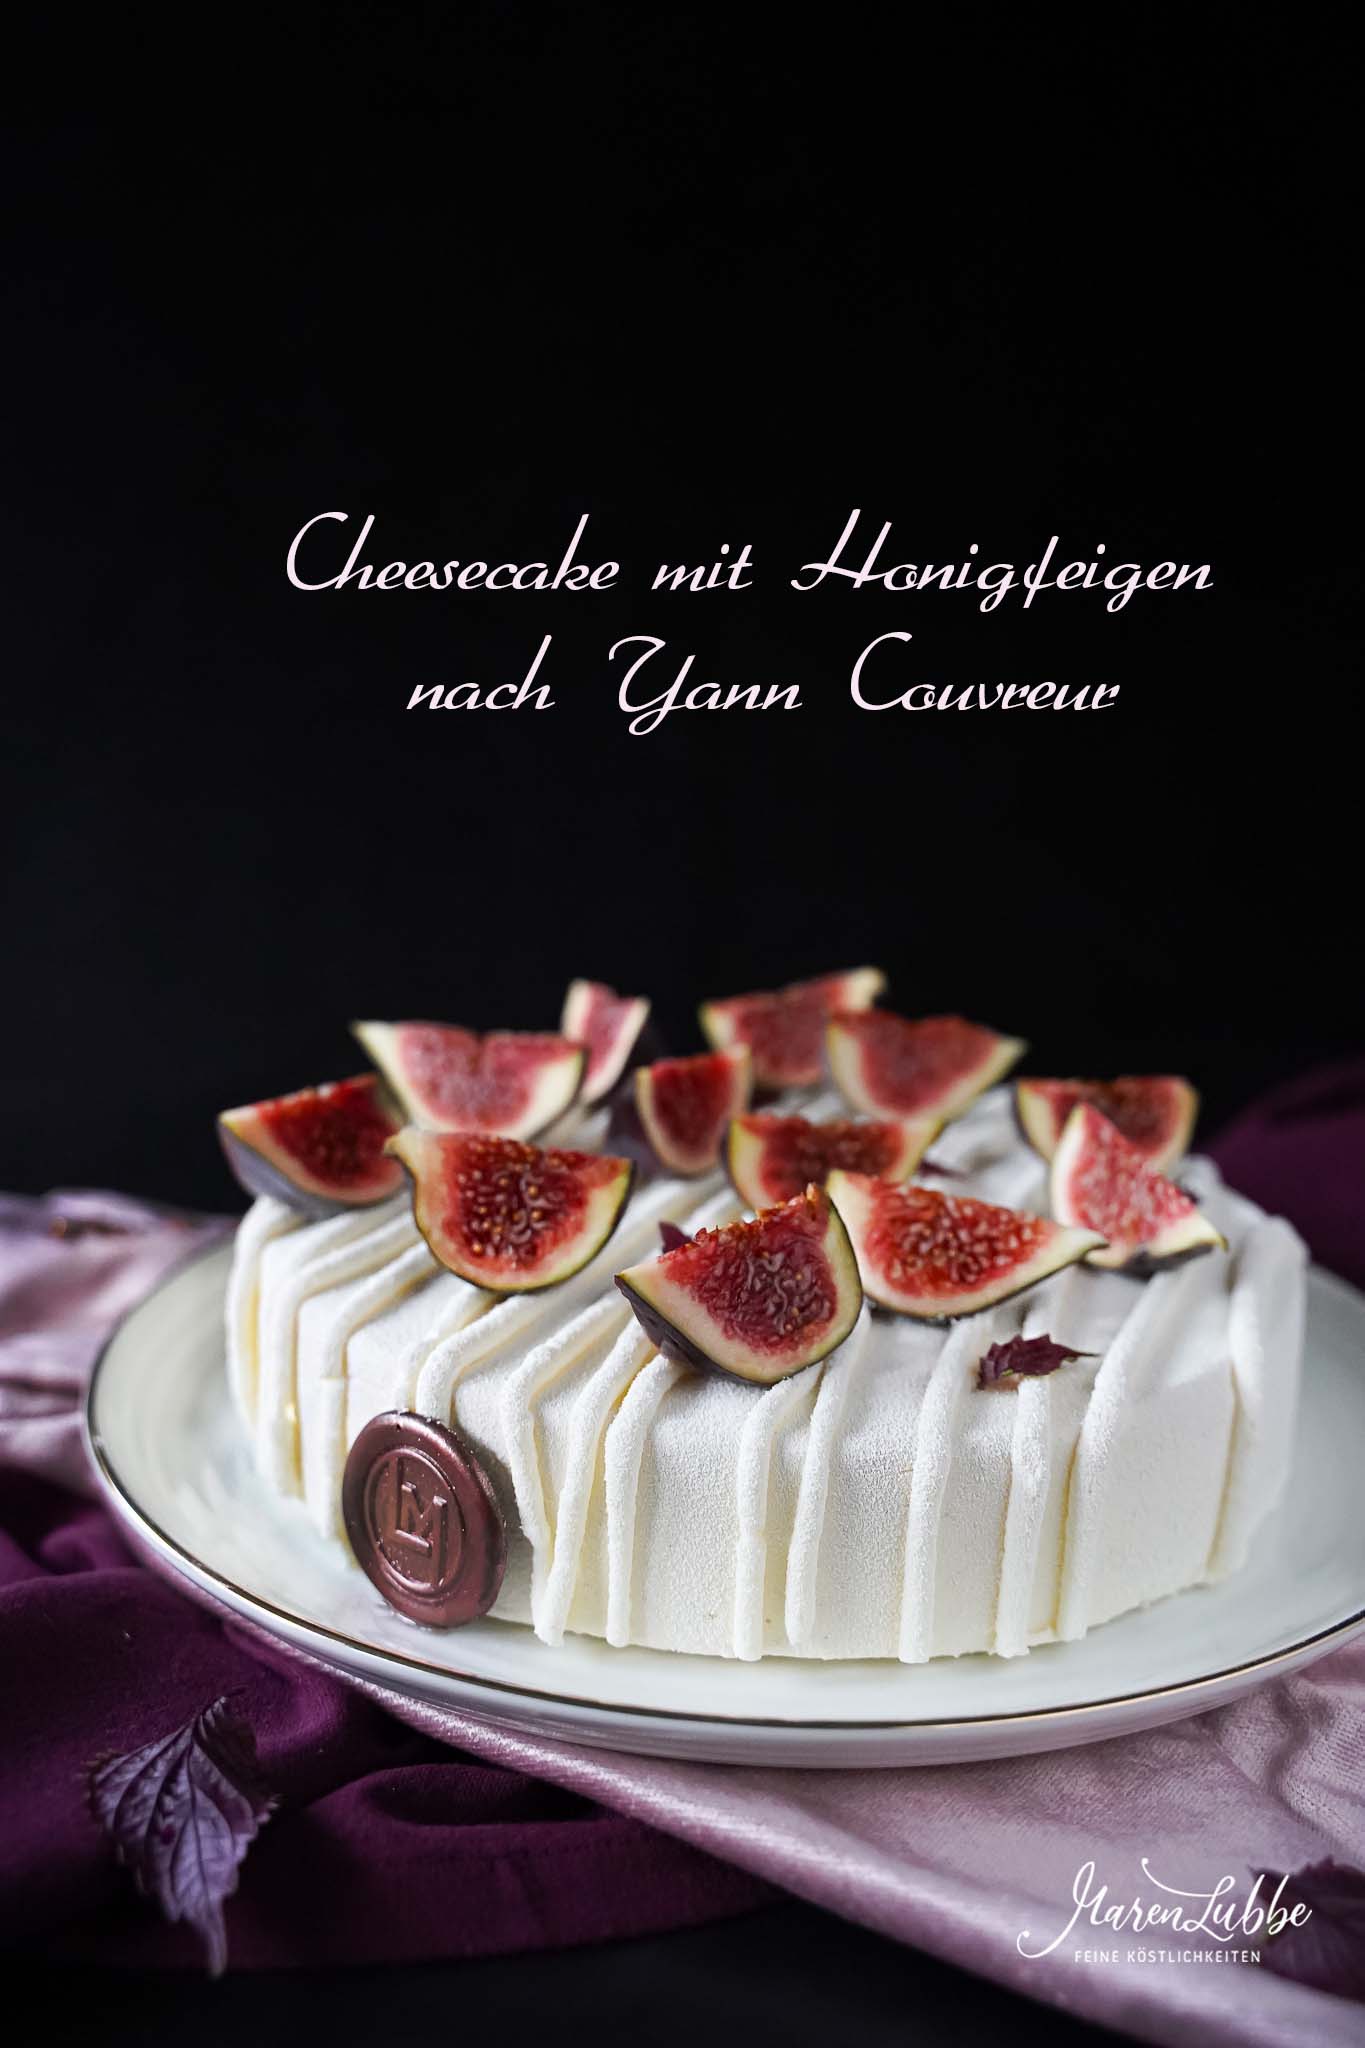 Cheesecake mit Honigfeigen nach Yann Couvreur